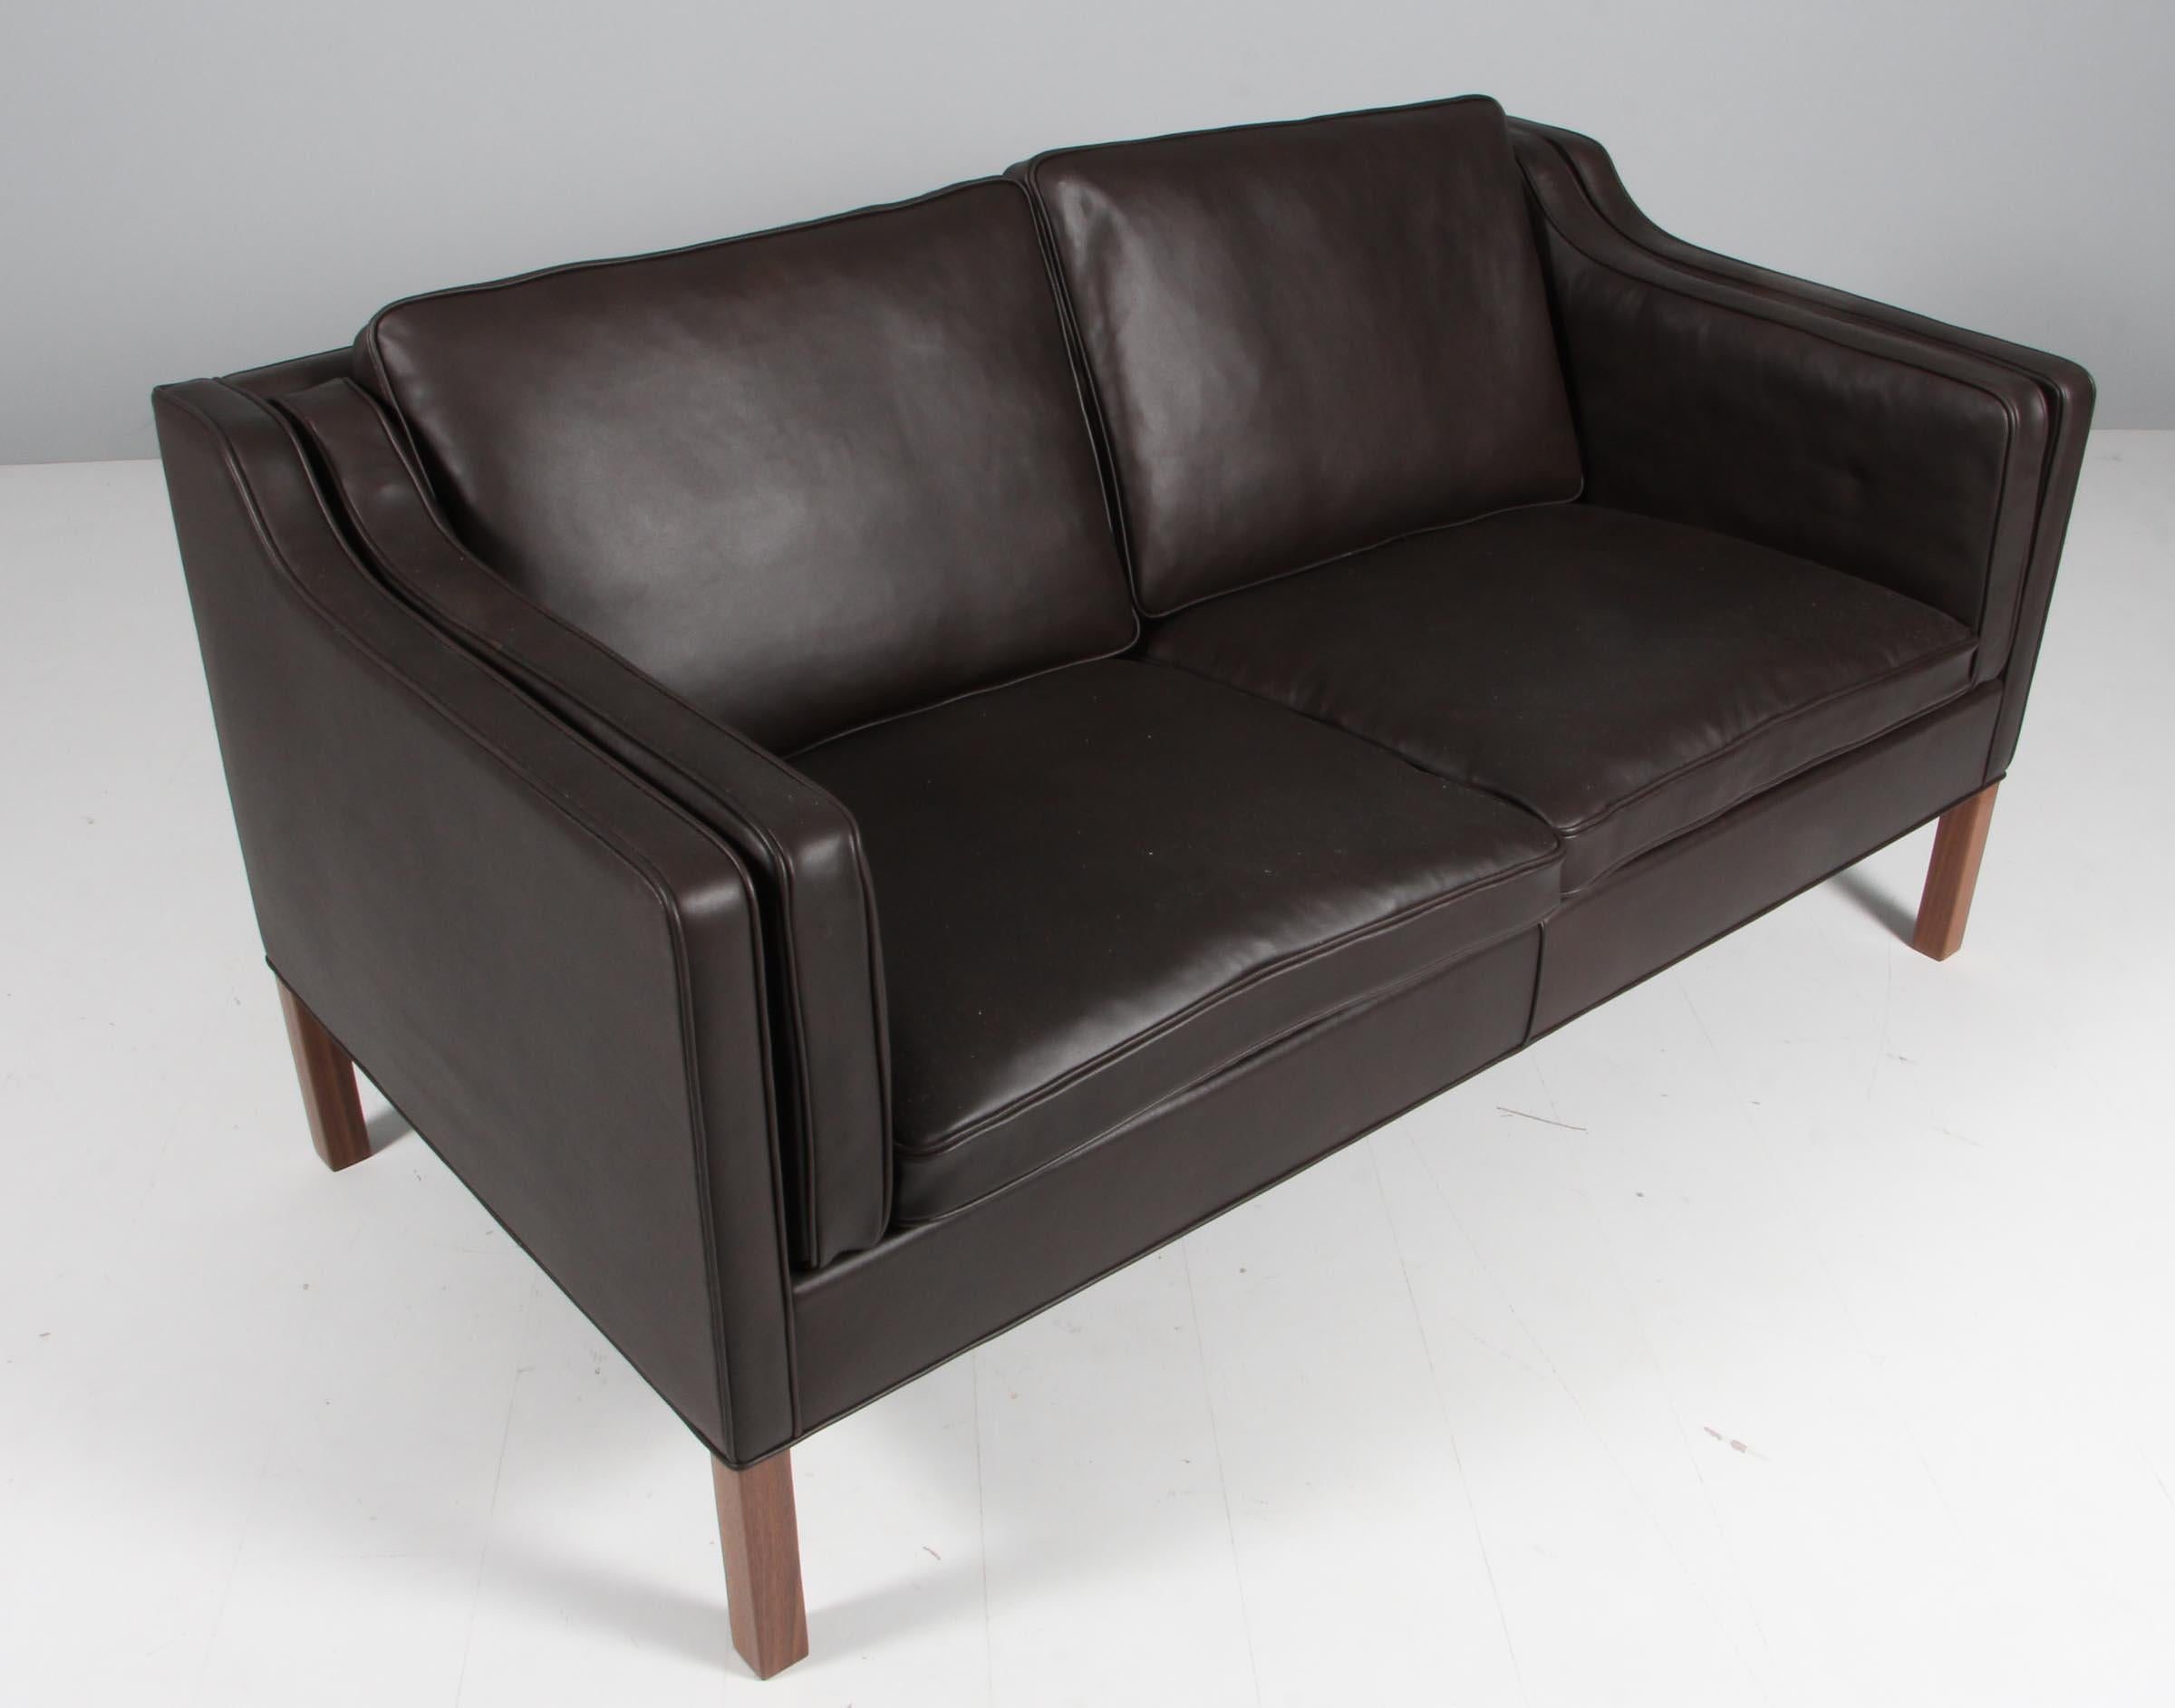 Børge Mogensen Zweisitzer-Sofa, neu gepolstert mit Mokka Elegance Anilinleder.

Beine aus Mahagoni.

Modell 2212, hergestellt von Fredericia Furniture.